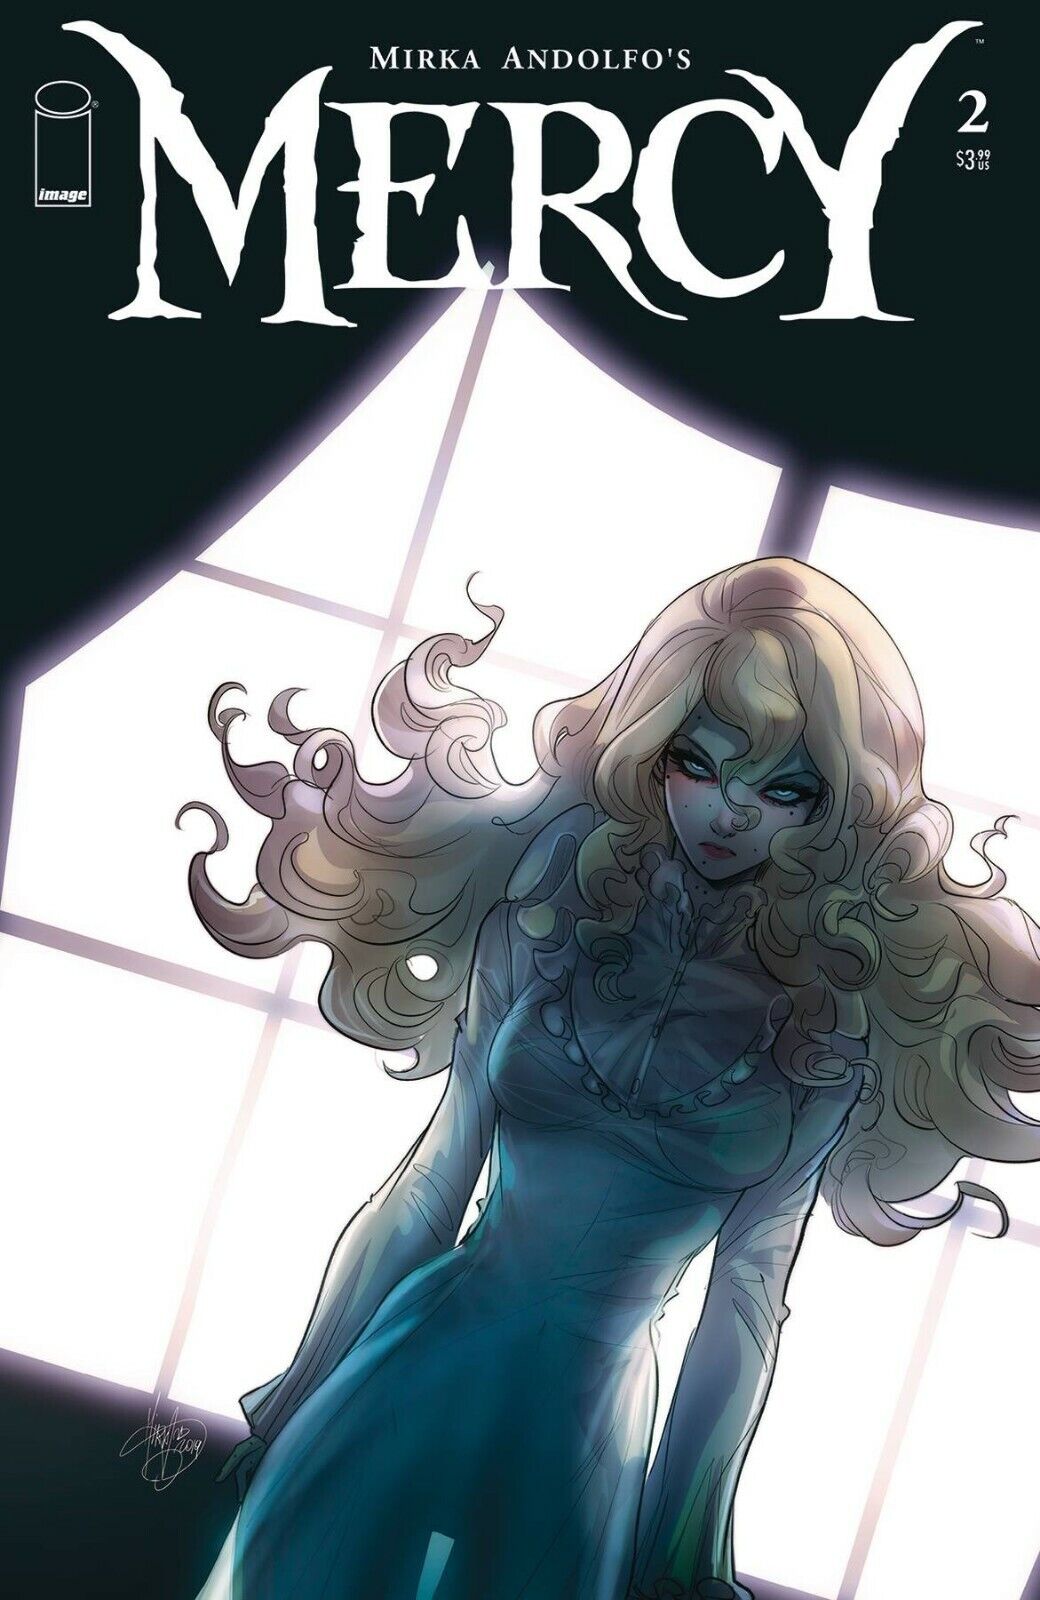 Mirka Andolfo's Mercy #2 - 6 (of 6) Main & Variant Covers You Pick Image Comics